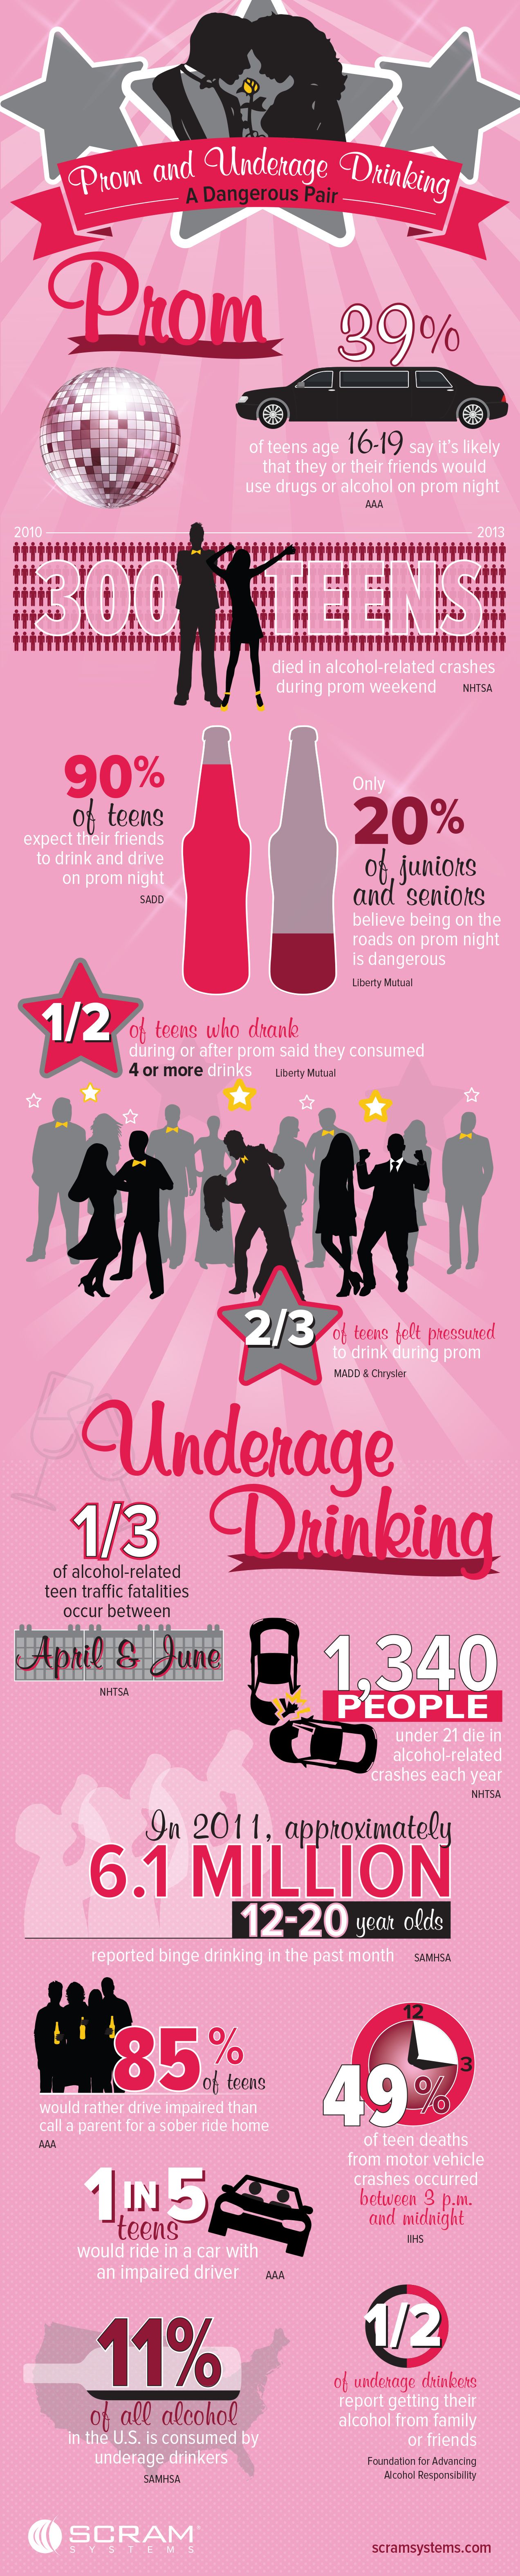 Underage Drinking Case Study